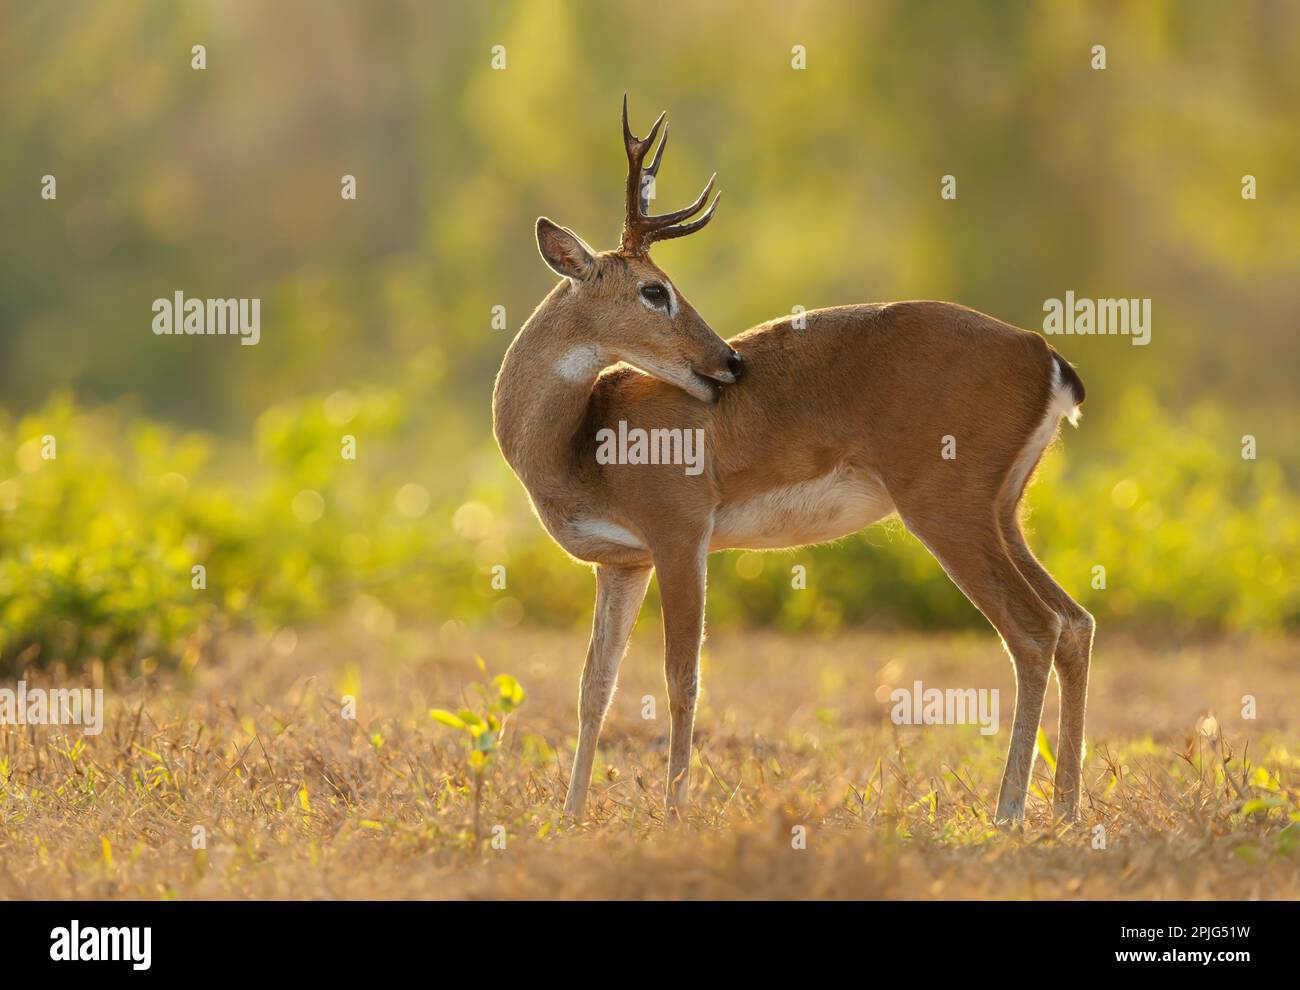 Close up of a Pampas deer at sunset, Pantanal, Brazil. Stock Photo